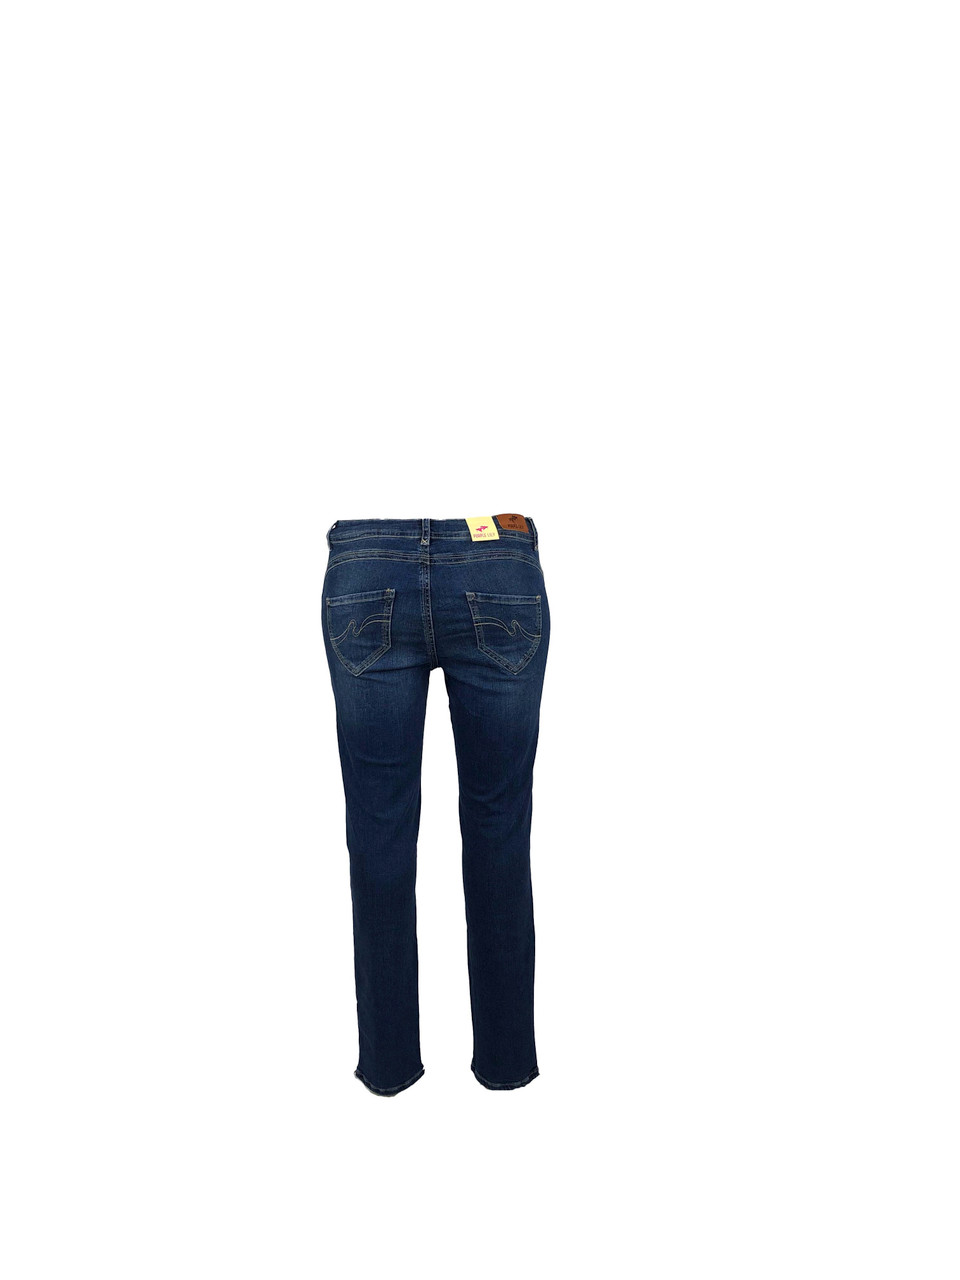 Achterkant van de mooie aanpassende fit jeans van Purple Lily in een midden blauwe kleur.
Verkrijgbaar van maat 40 tot en met maat 50.